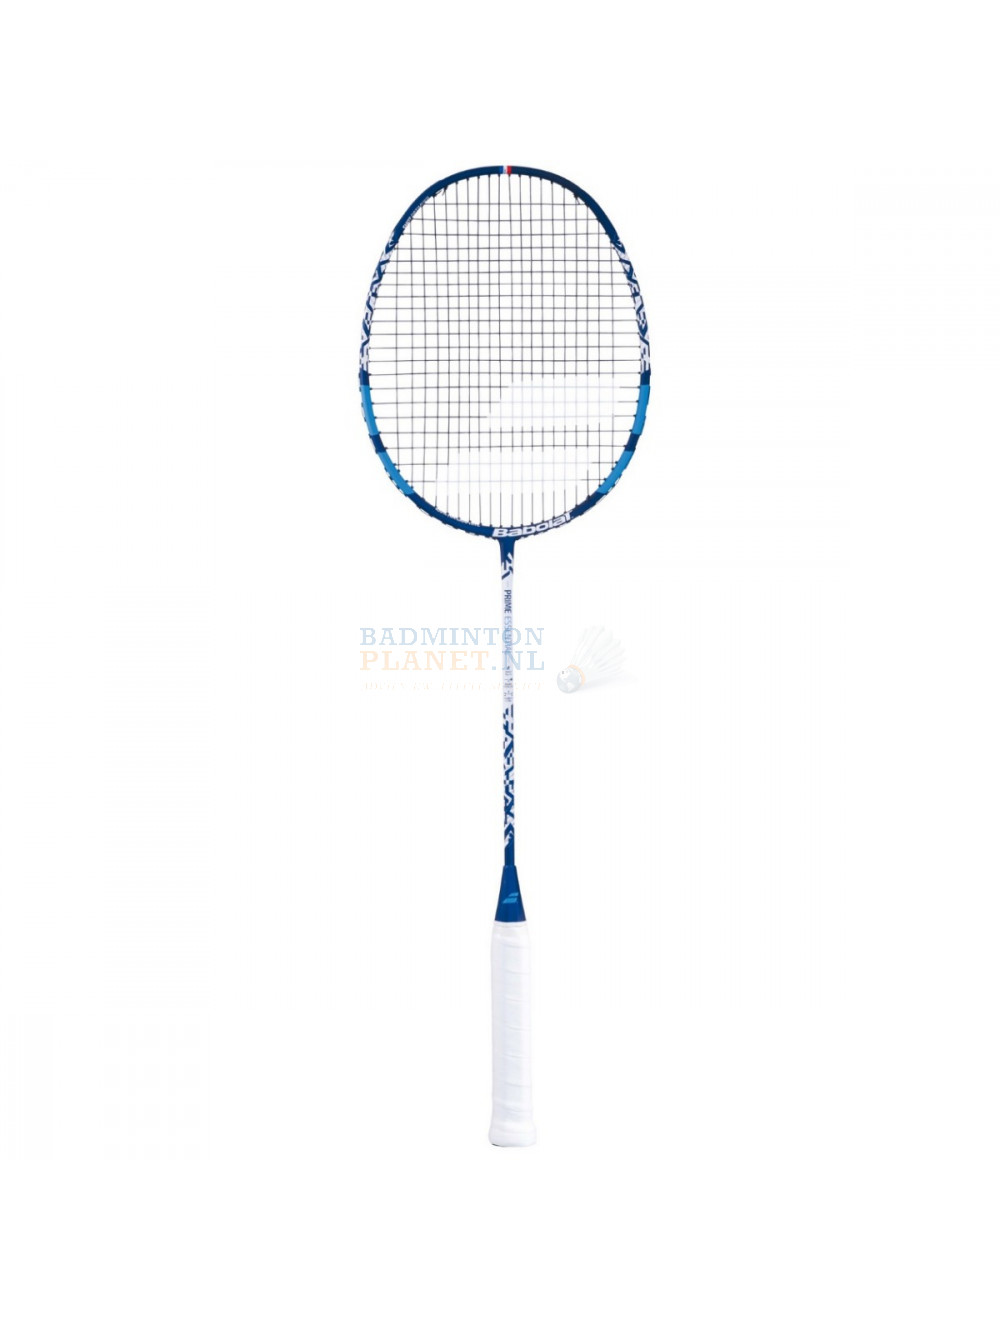 Aarde Regulatie Outlook Babolat Prime Essential badmintonracket kopen? - Badmintonplanet.nl